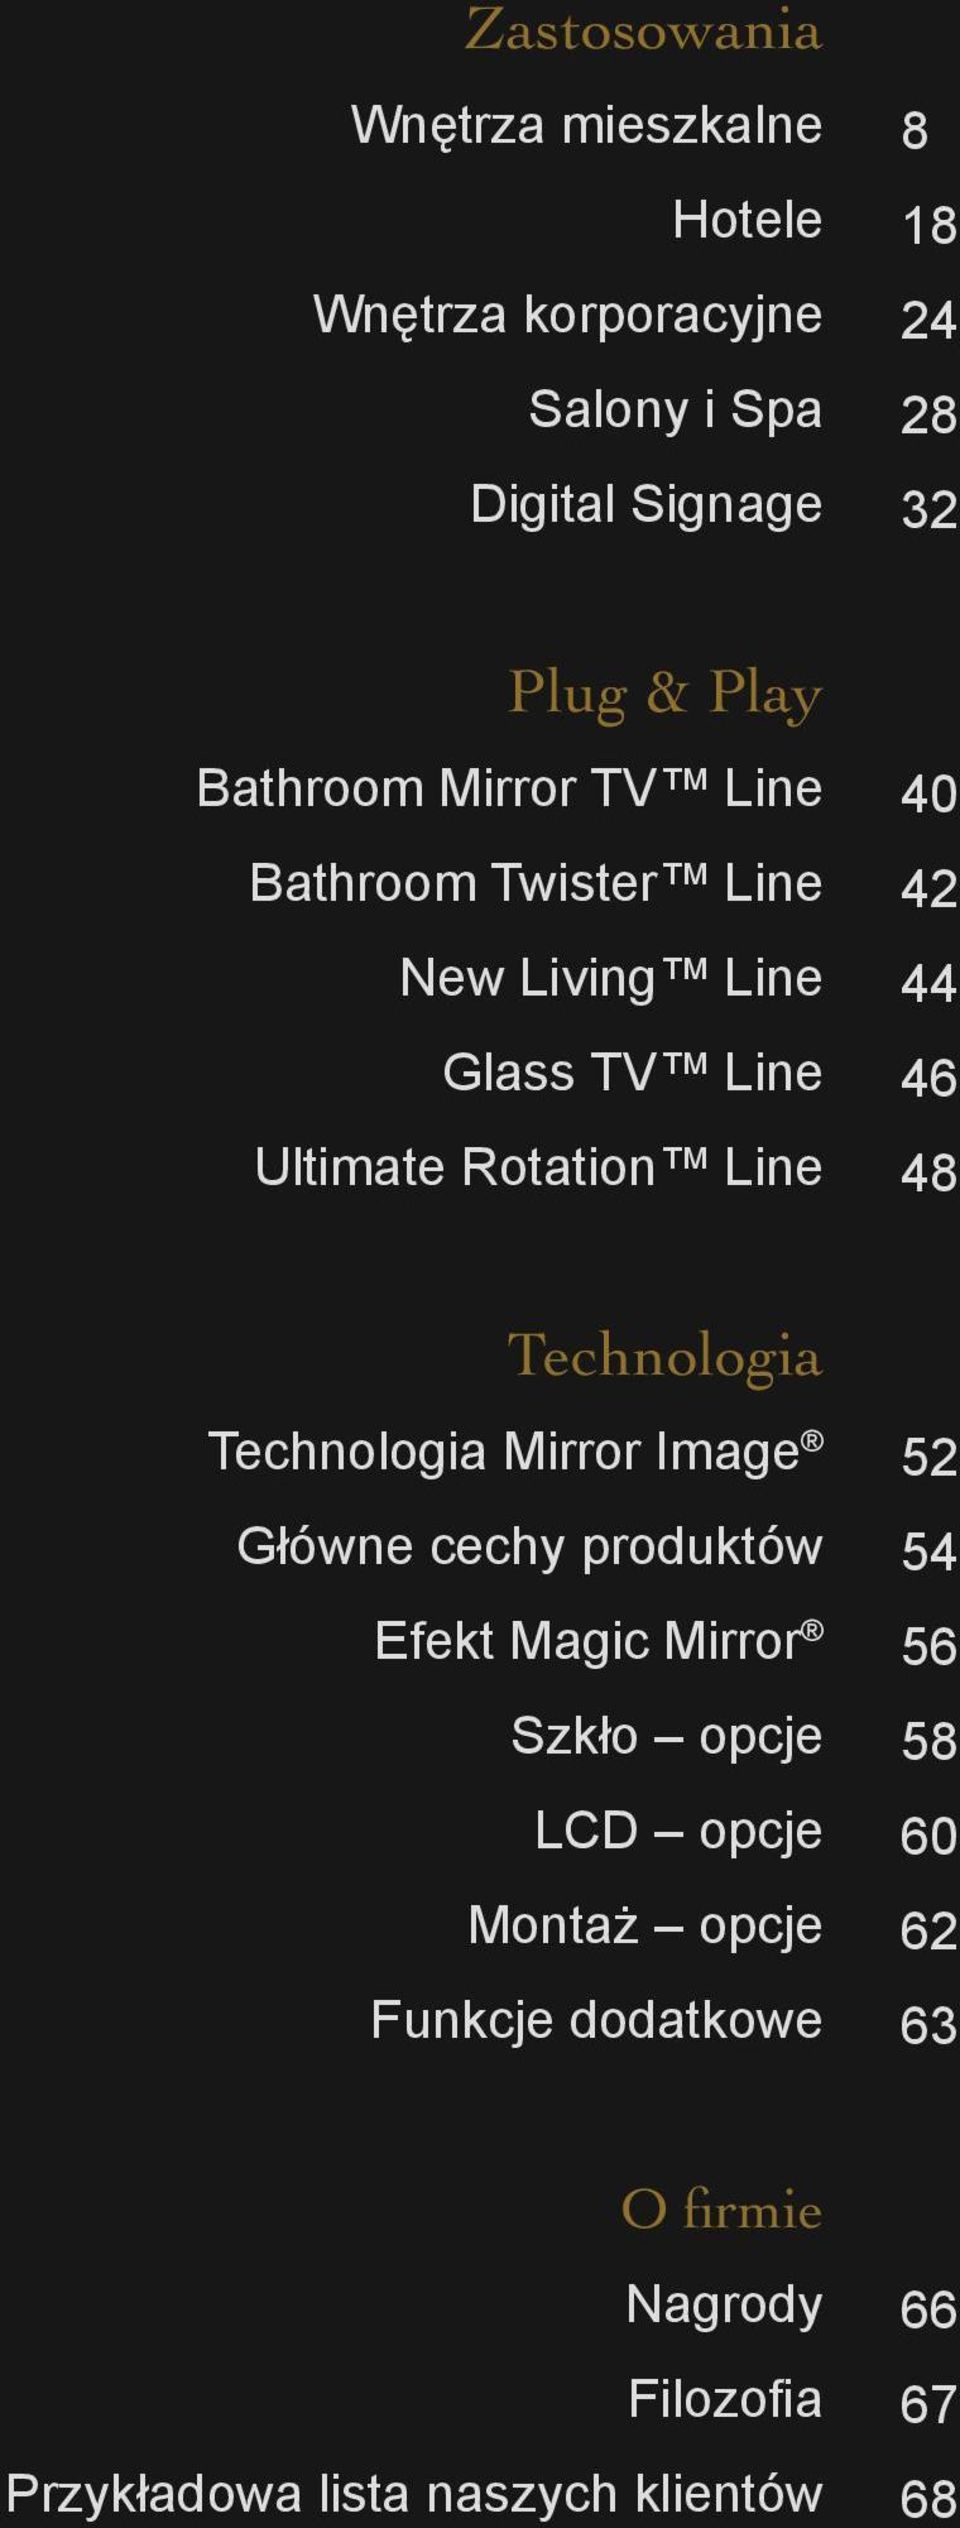 46 48 Technologia Technologia Mirror Image Główne cechy produktów Efekt Magic Mirror Szkło opcje LCD opcje